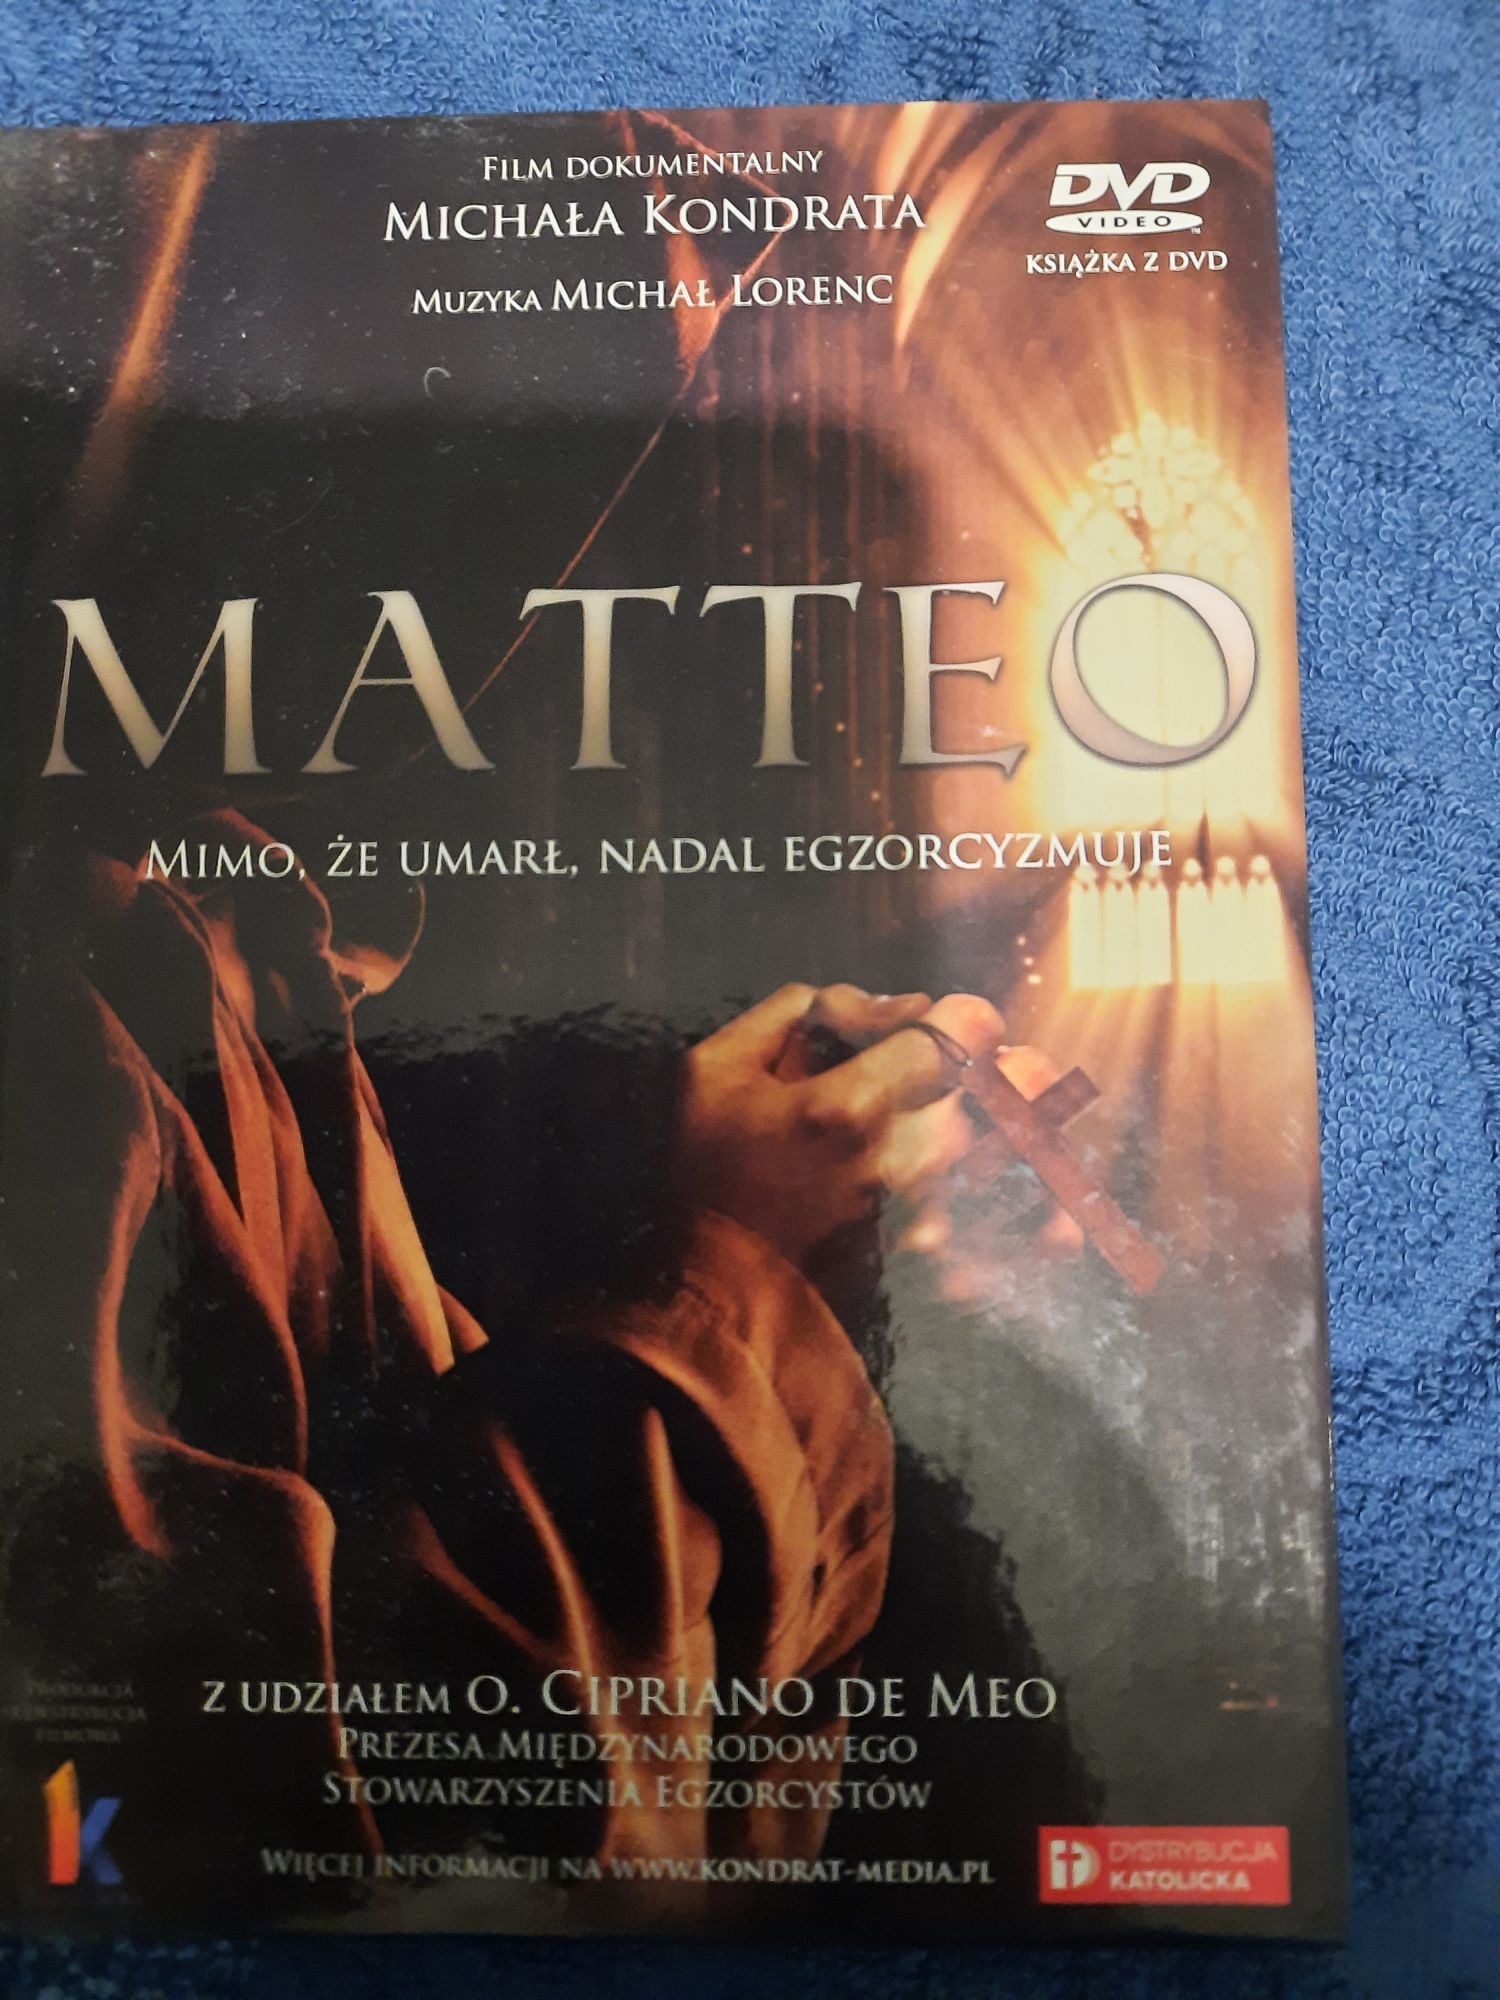 Matteo Mimo, że umarł, nadal egzorcyzmuje. Muzyka M. Lorenc film